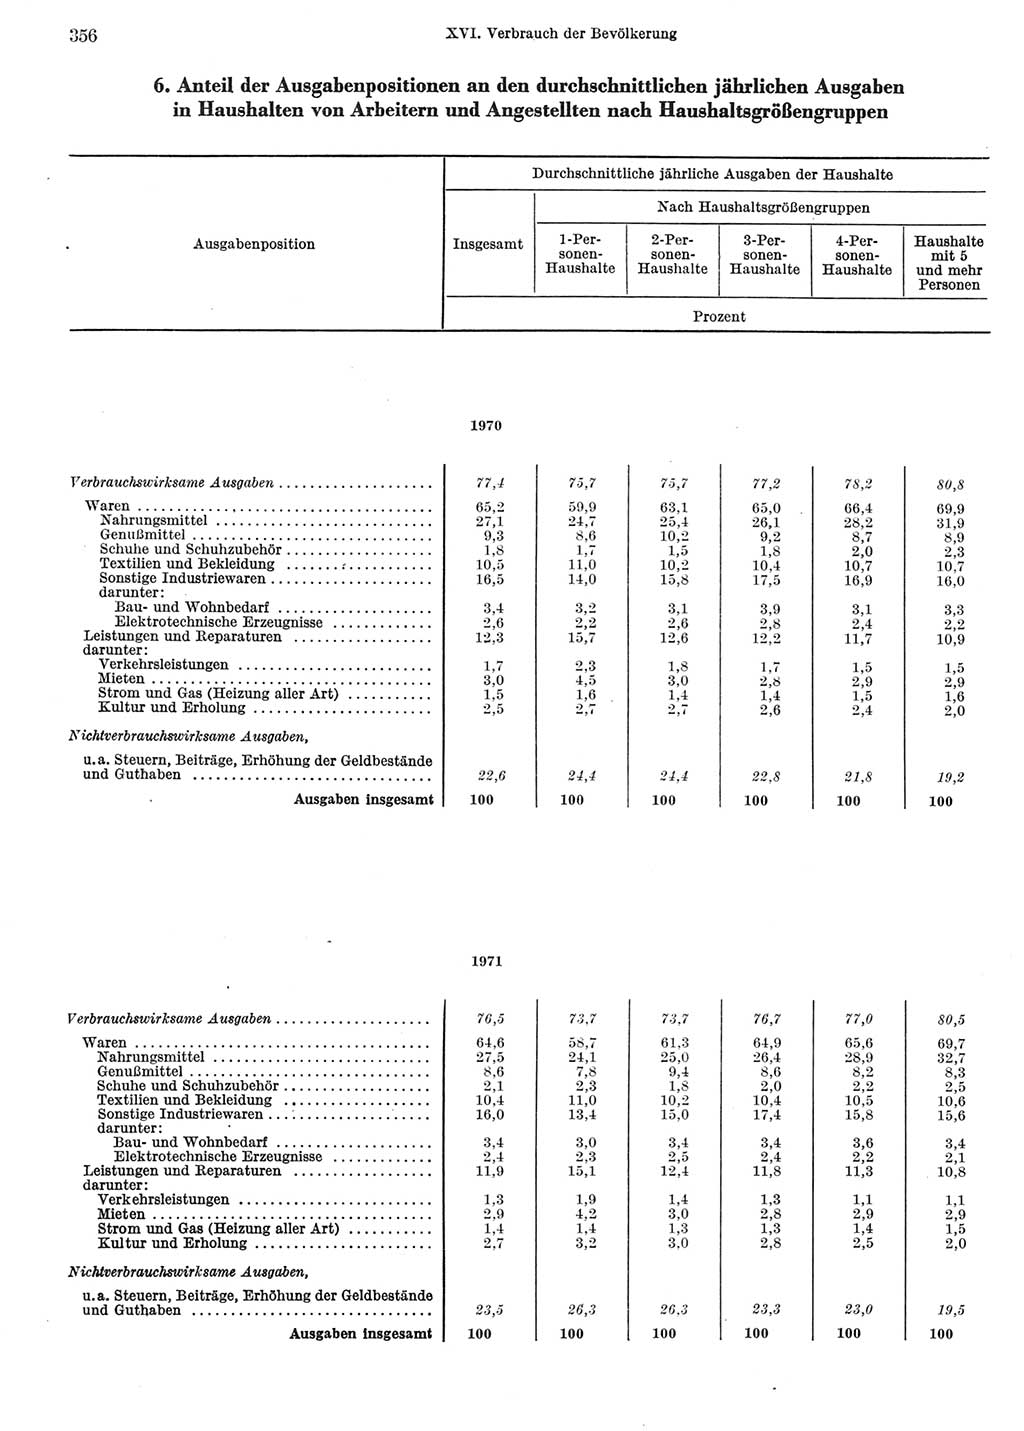 Statistisches Jahrbuch der Deutschen Demokratischen Republik (DDR) 1972, Seite 356 (Stat. Jb. DDR 1972, S. 356)